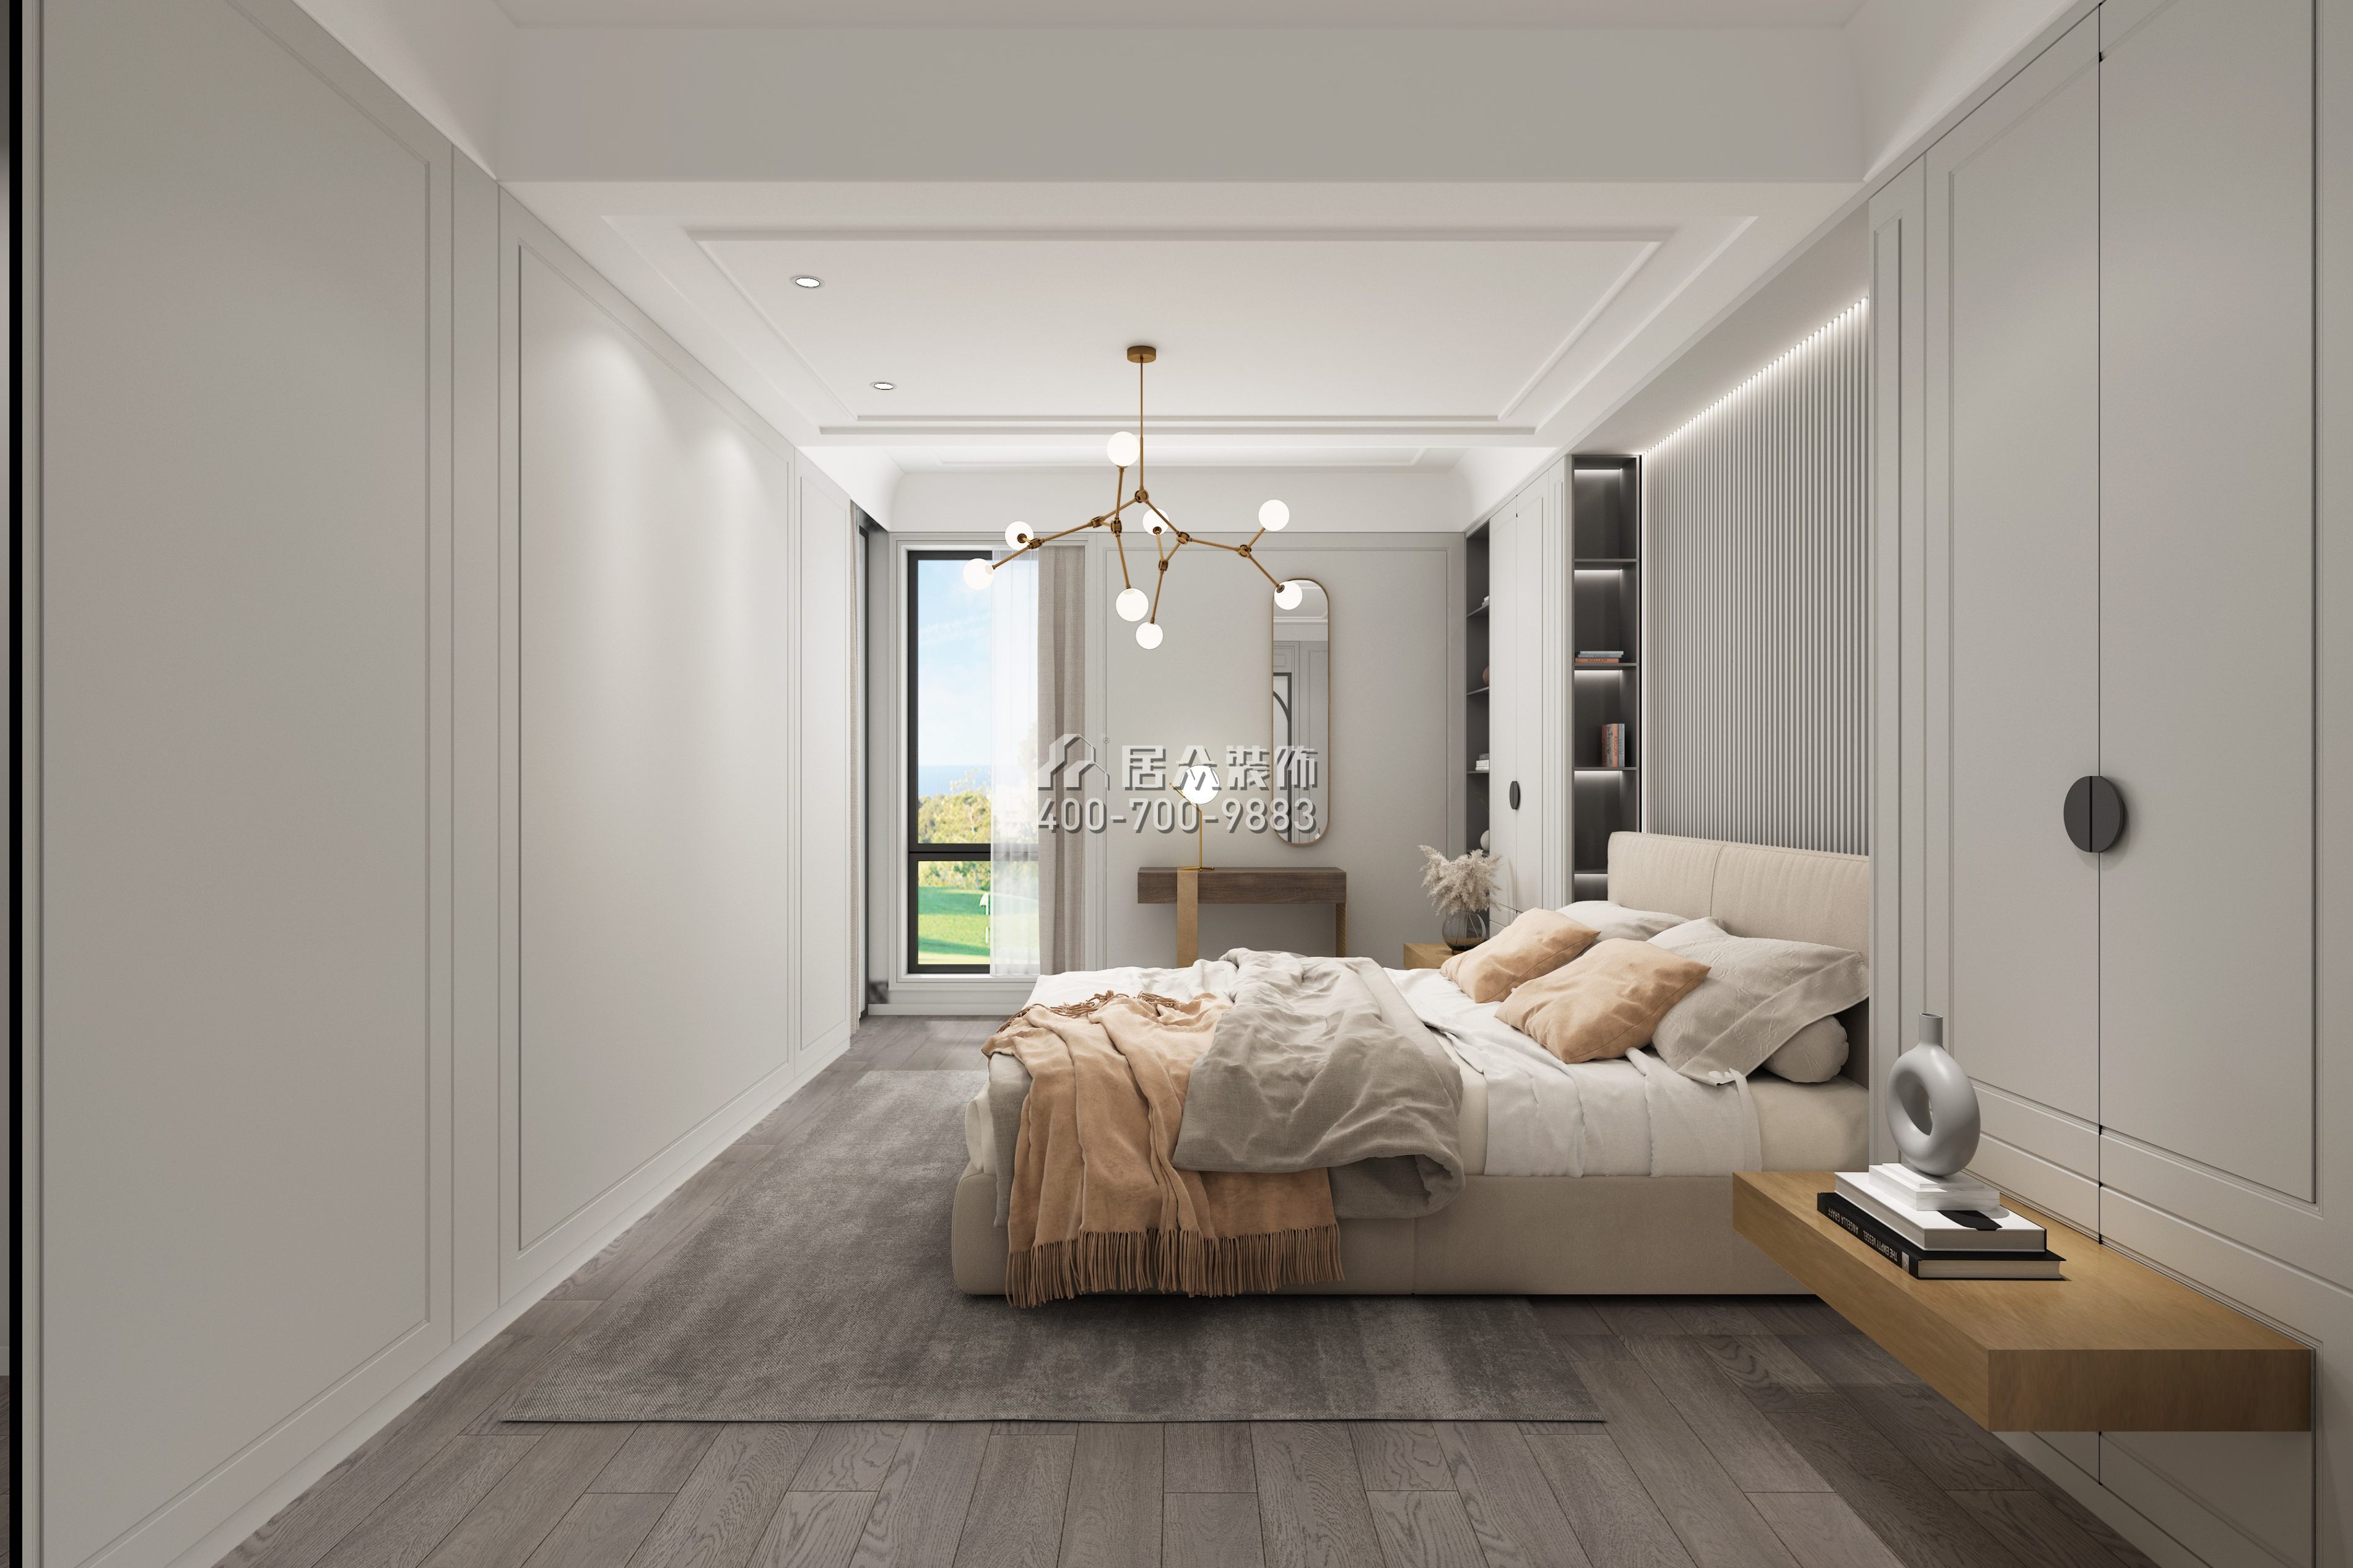 觀瀾高爾夫64平方米現代簡約風格平層戶型臥室裝修效果圖